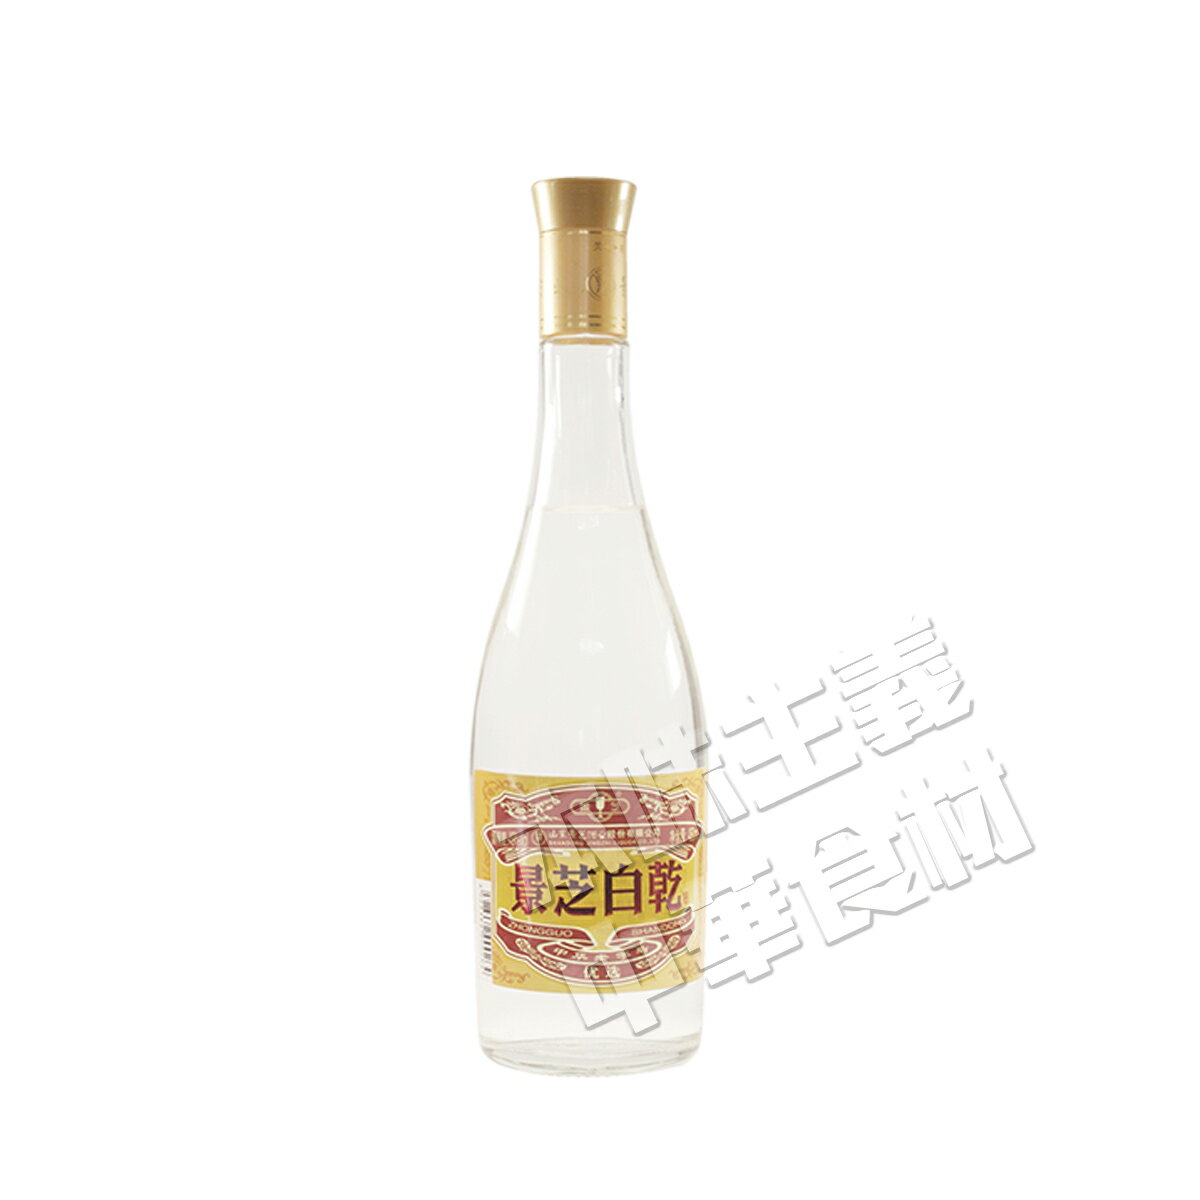 中国景芝白乾高粱酒・白酒49度（ ケイシパイカルパイチュウ）中国名物・山東名酒・中華料理人気商品